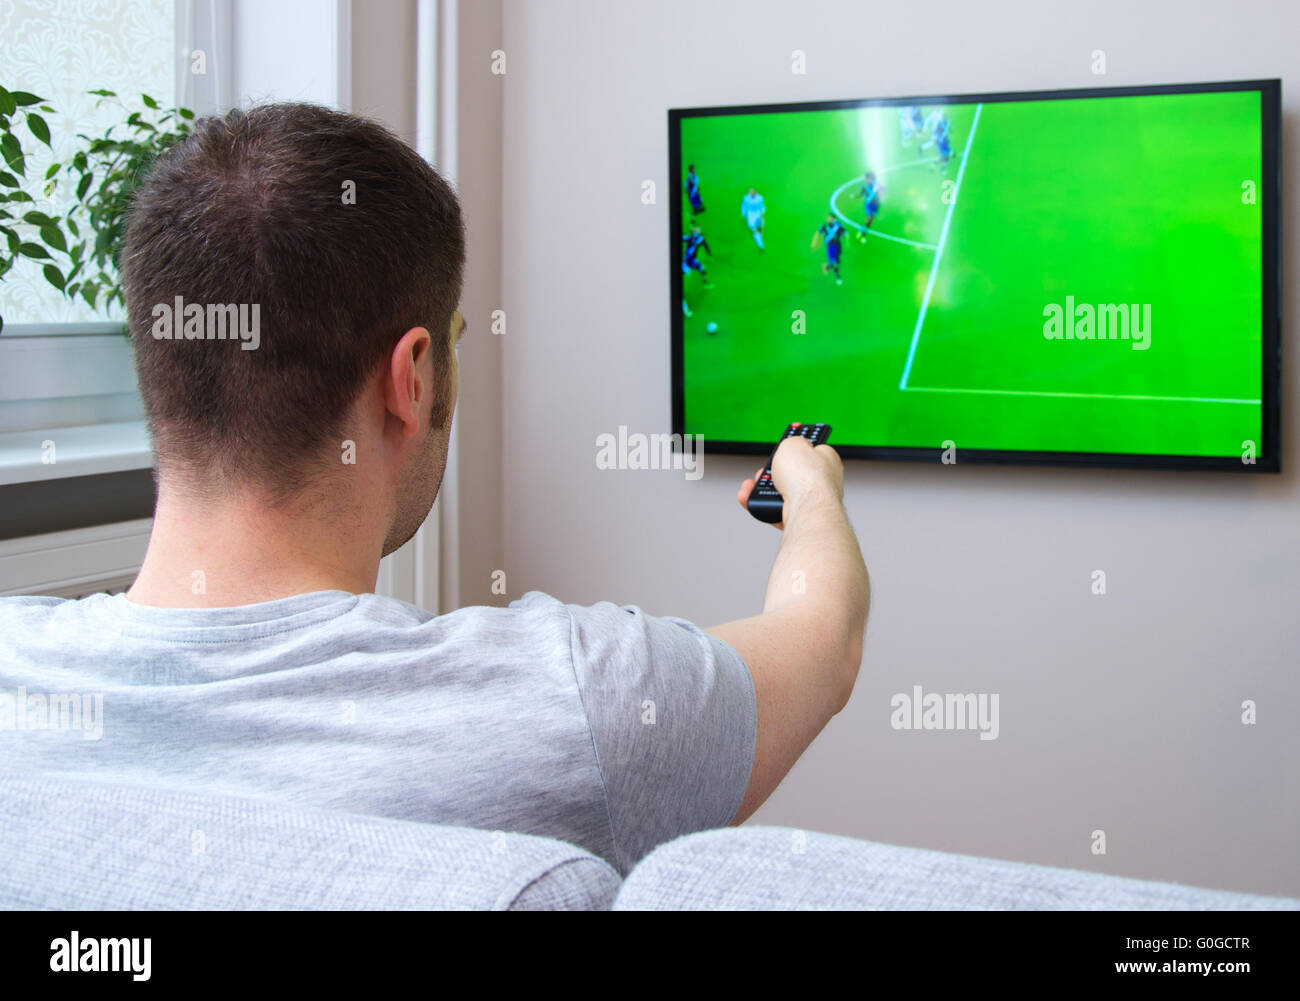 Hombre partido de fútbol en la televisión casa Fotografía de stock -